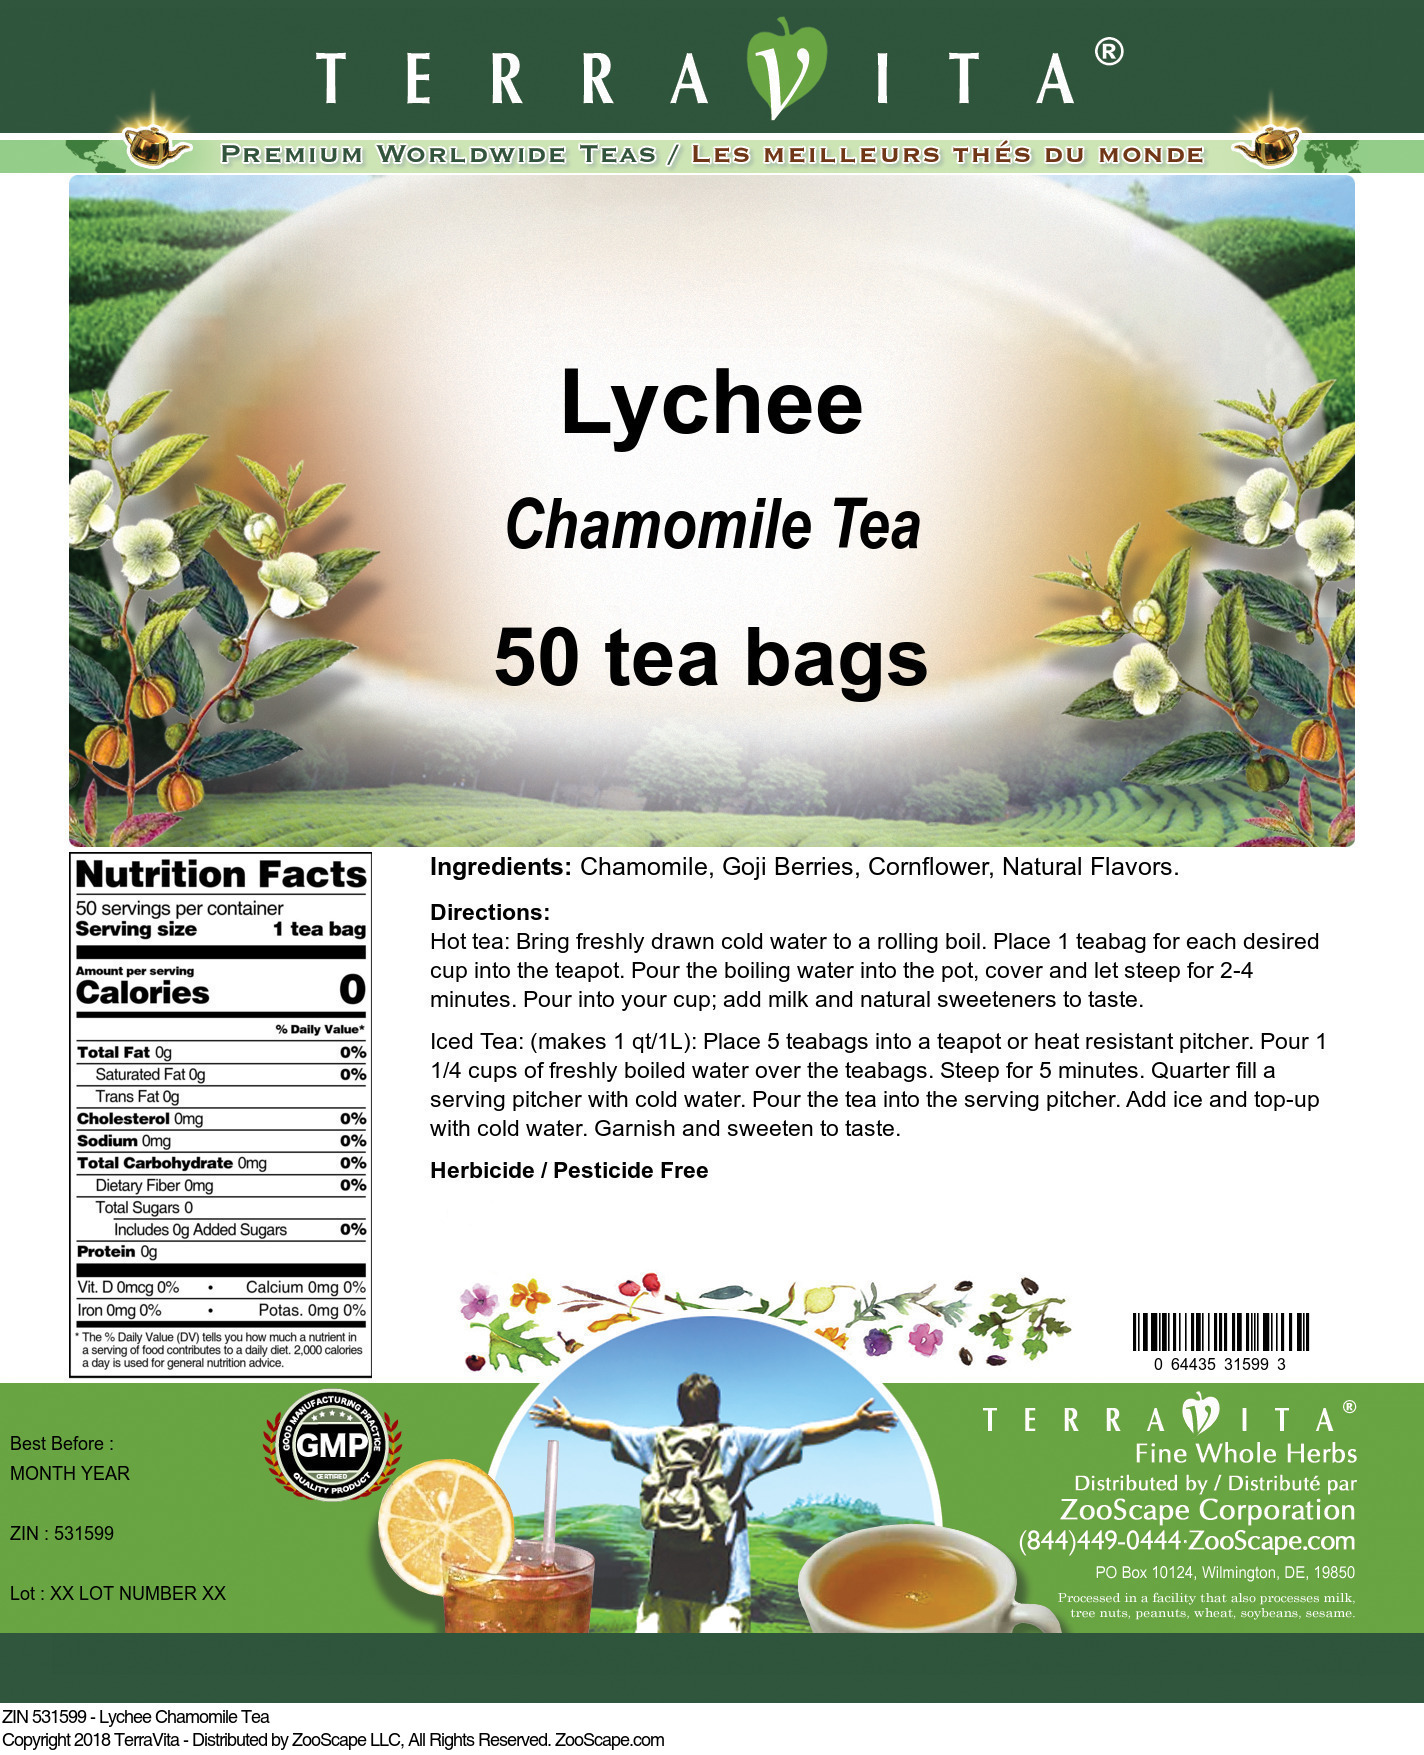 Lychee Chamomile Tea - Label